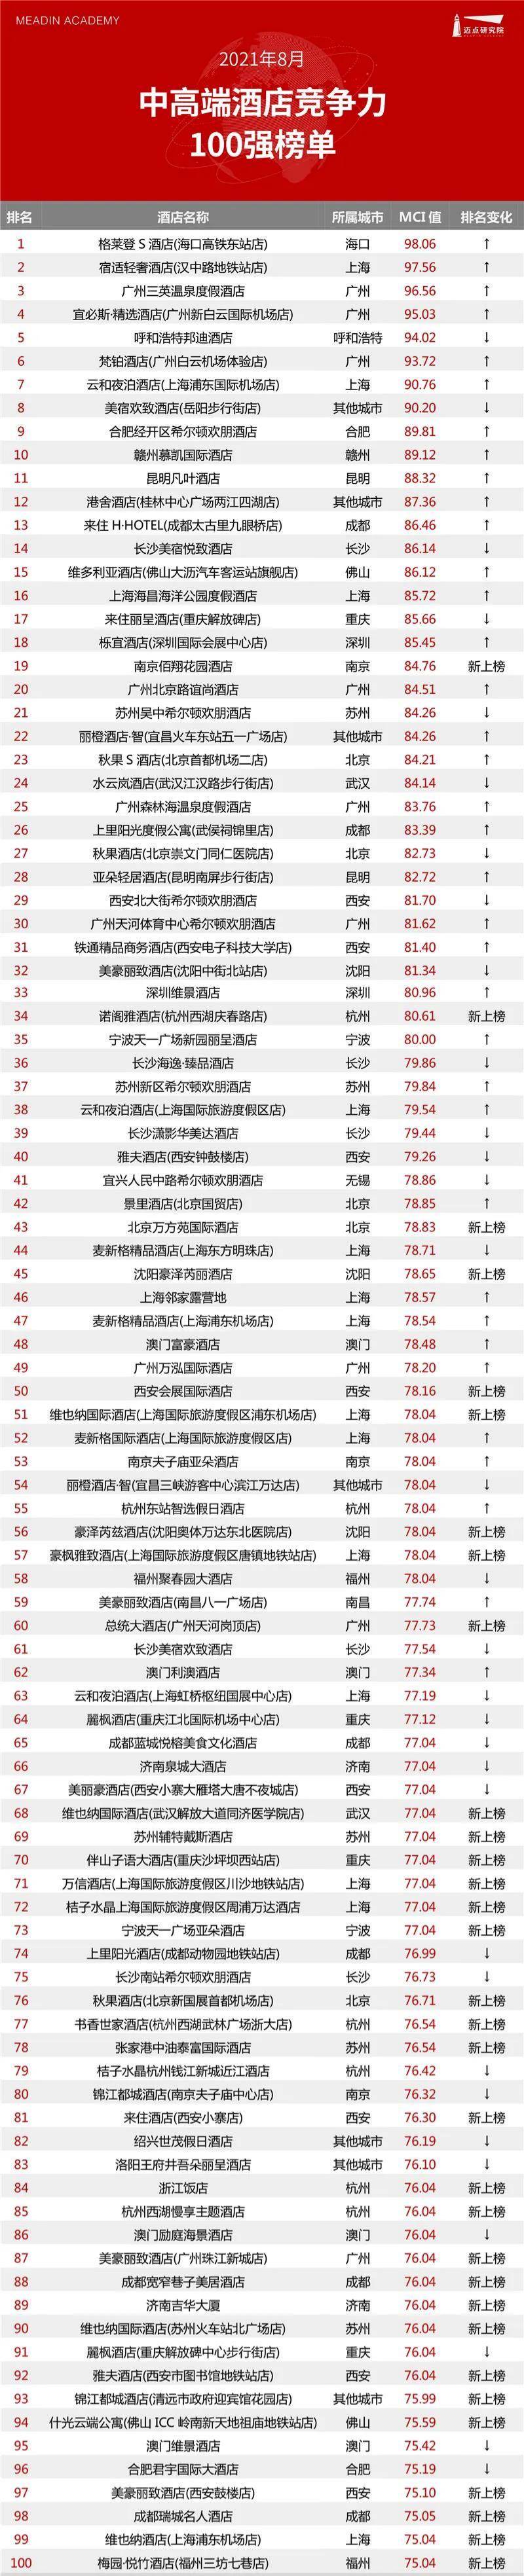 必博体育2021年8月中高端酒店竞争力指数100强榜单(图1)